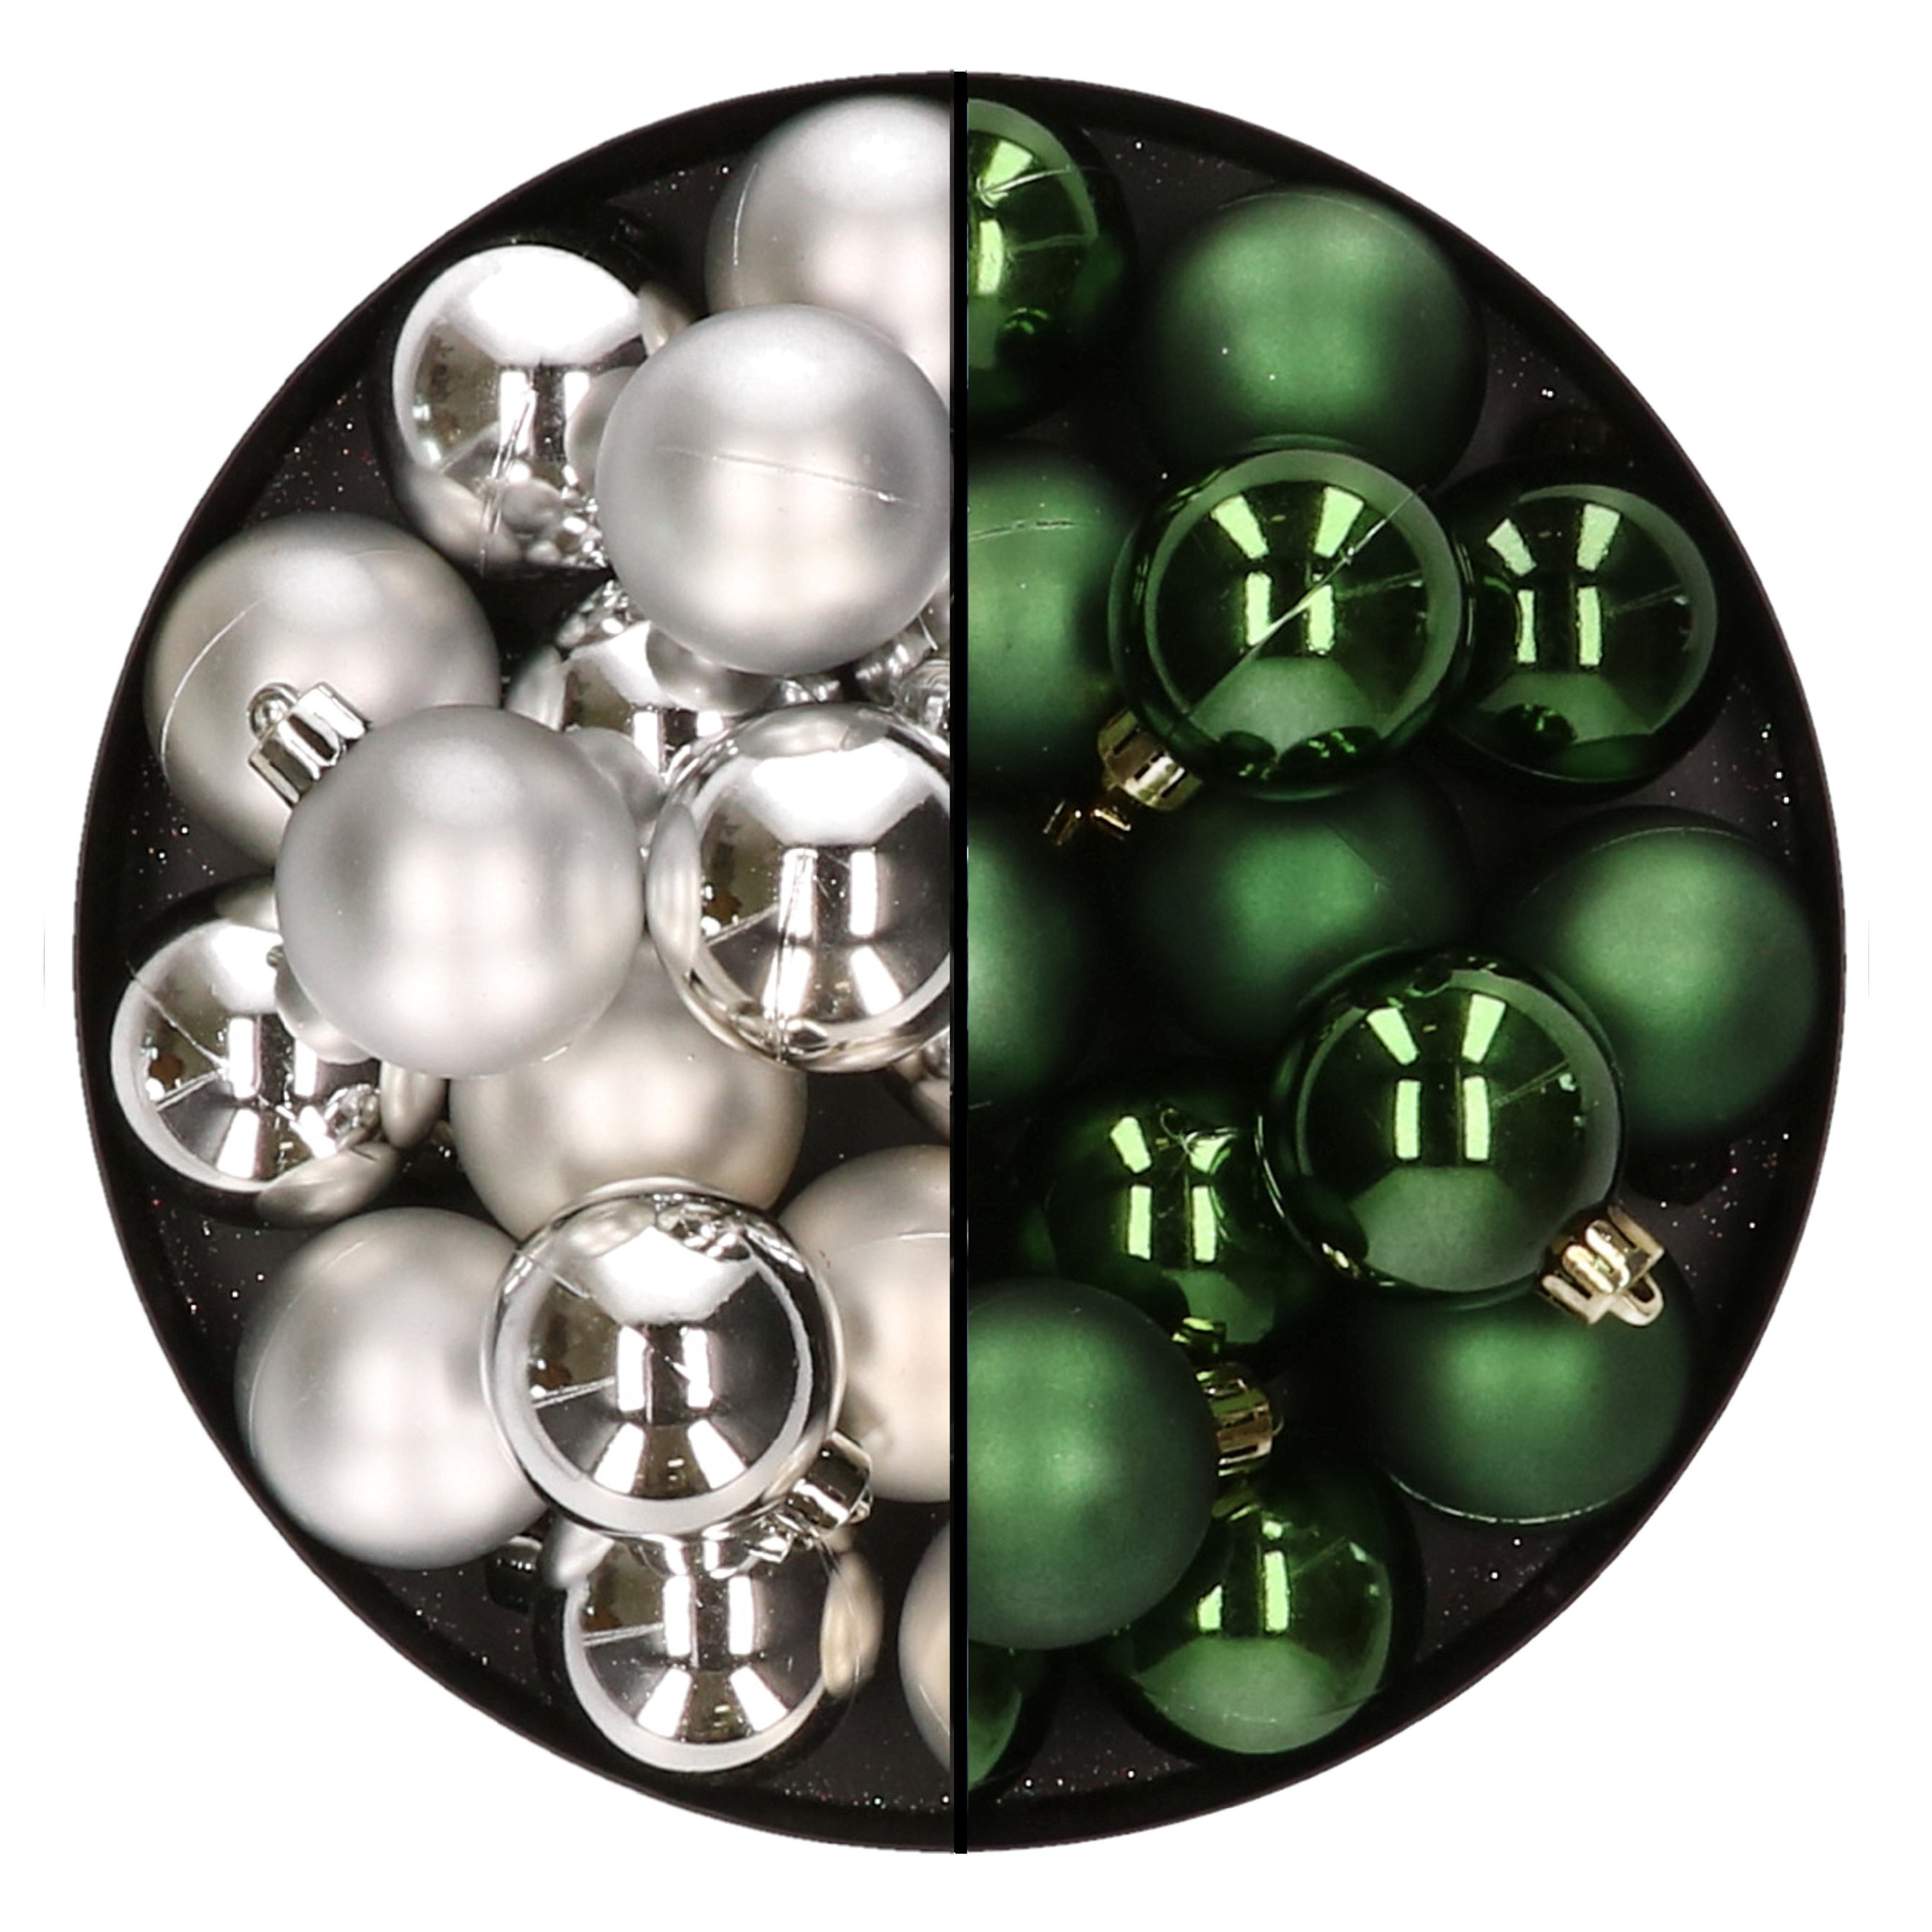 32x stuks kunststof kerstballen mix van zilver en donkergroen 4 cm